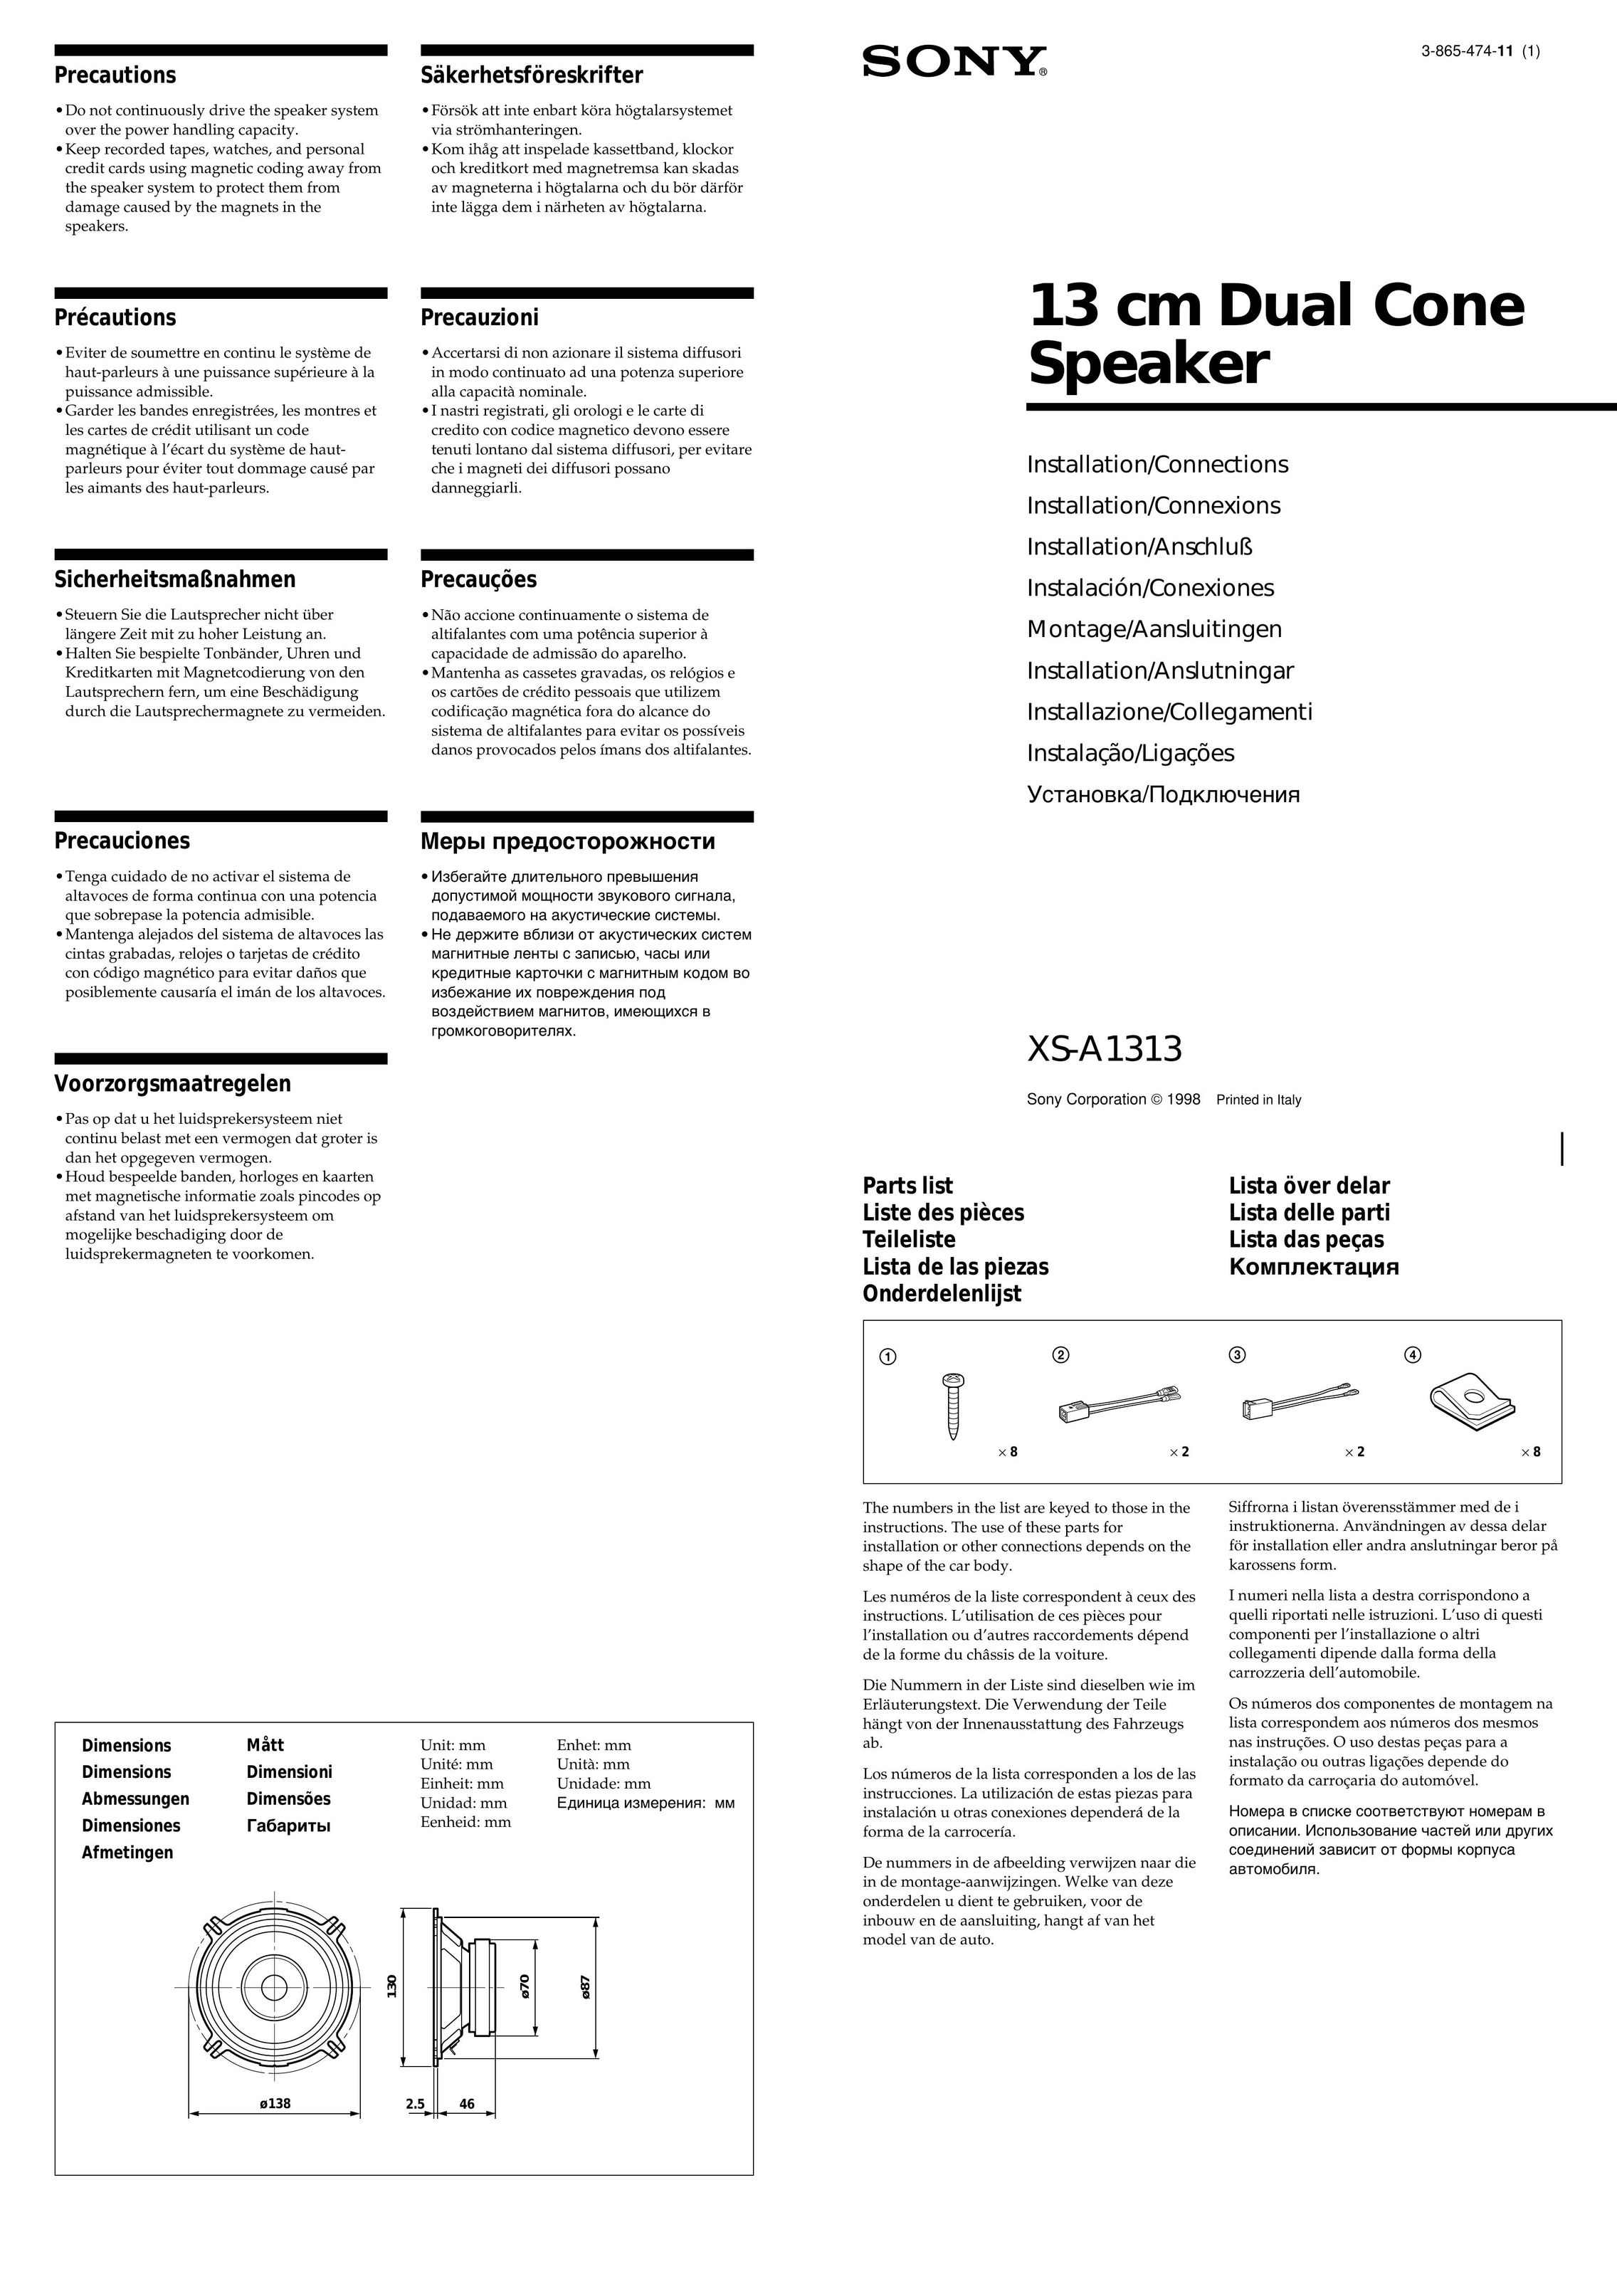 Sony XS-A1313 Car Speaker User Manual